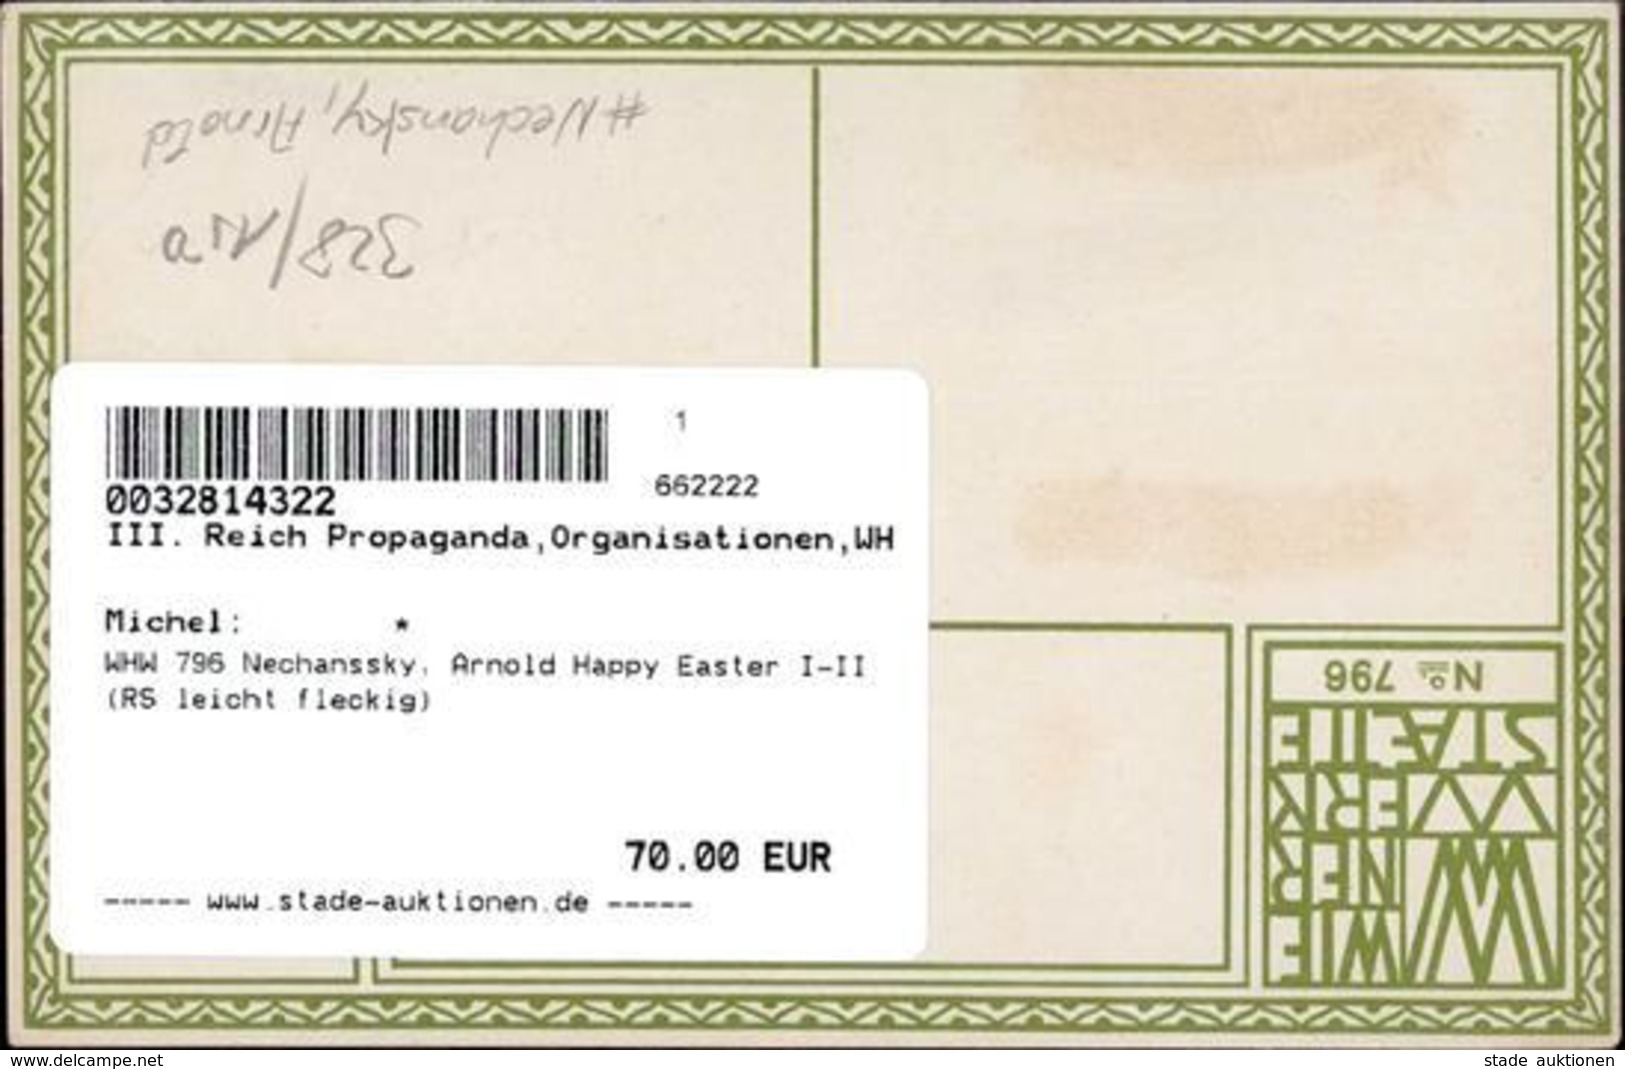 Wiener Werkstätte 796 Nechanssky, Arnold Happy Easter I-II (RS Leicht Fleckig) - Kokoschka